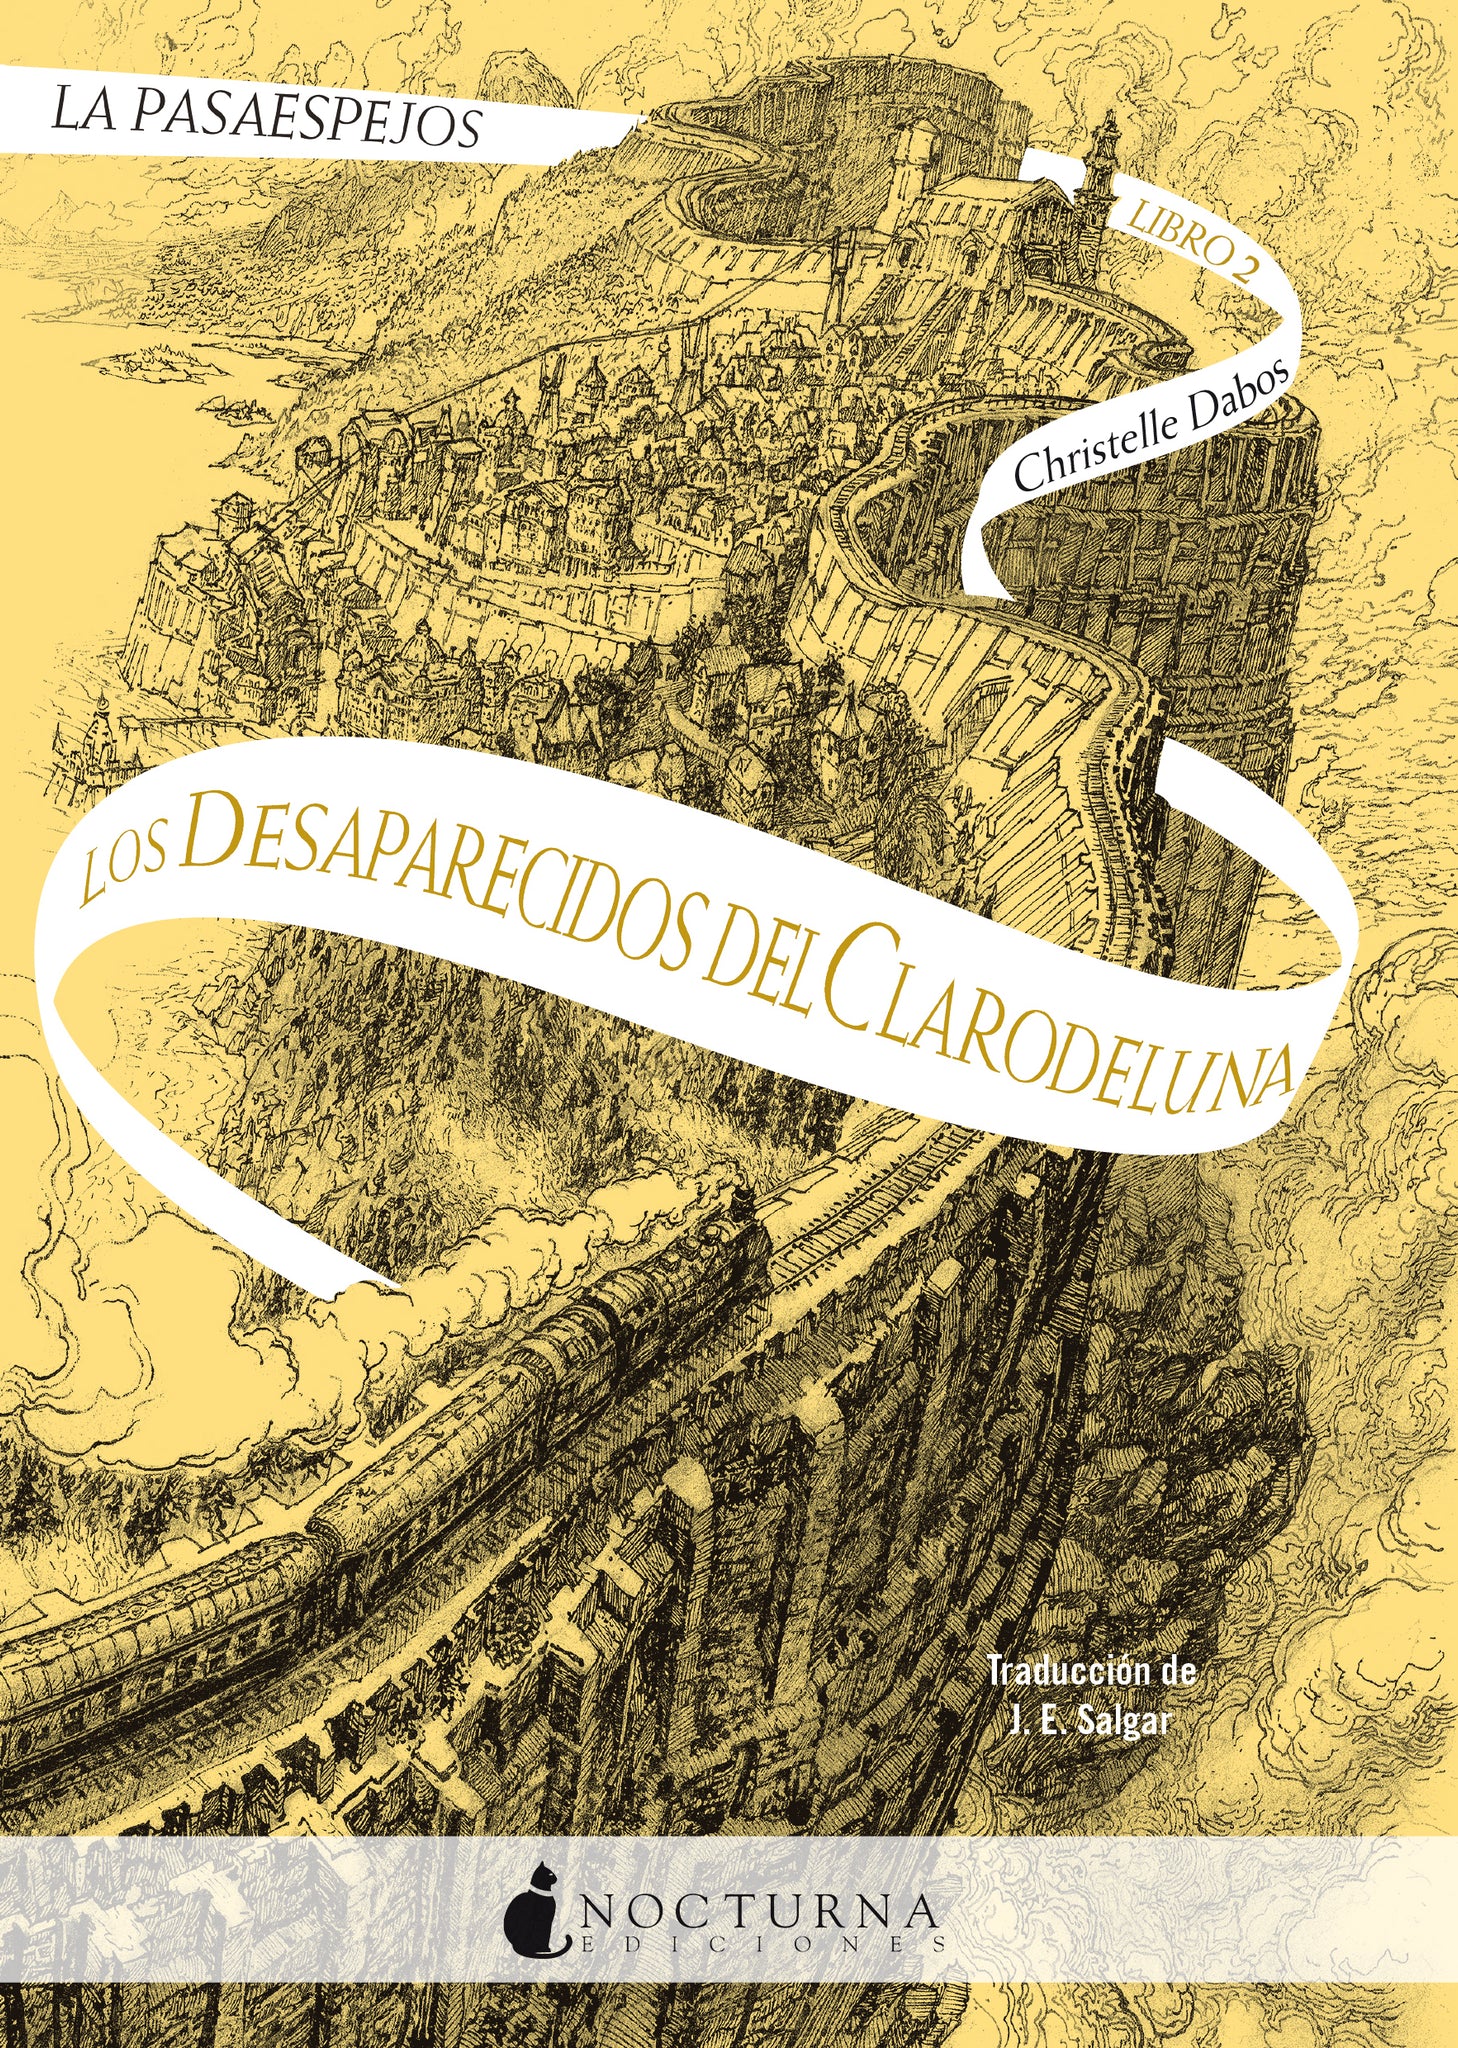 La Pasaespejos: Los desaparecidos del Clarodeluna (Christelle Dabos)